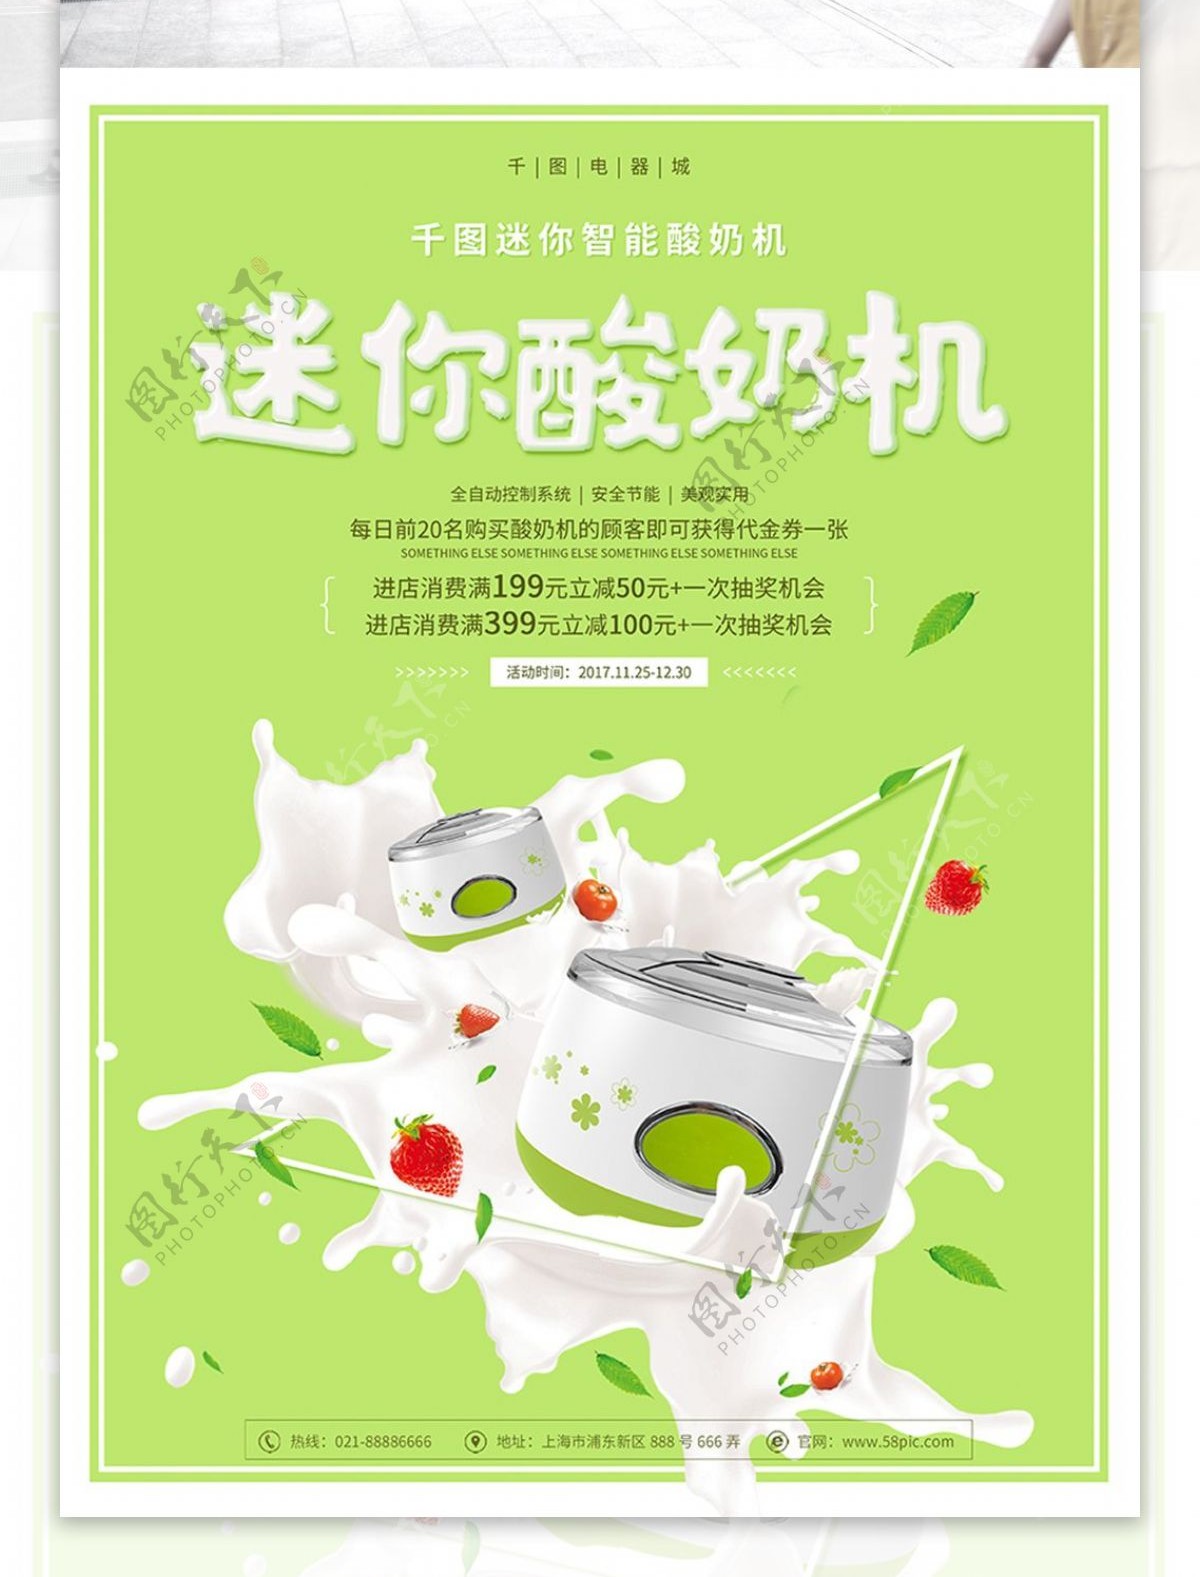 迷你酸奶机牛奶草莓浅绿色简约电器促销海报